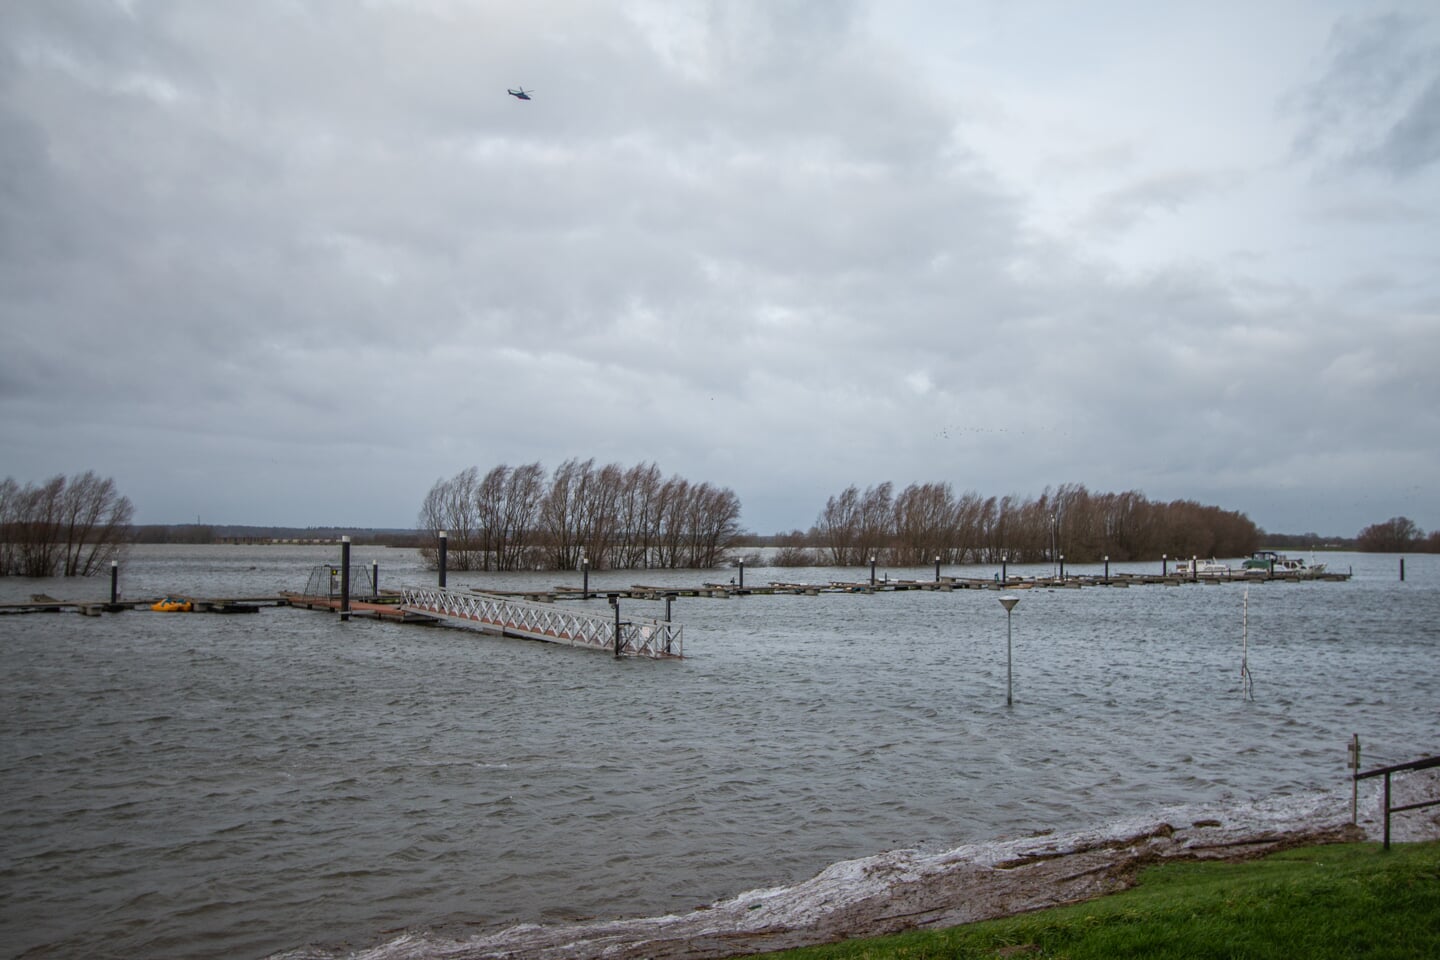 Het water in de IJssel bij het IJsselstrand in Doesburg bij Achter-Drempt is hoog. Een helikopter draait er rondjes boven, waarschijnlijk controle. Foto: Liesbeth Spaansen